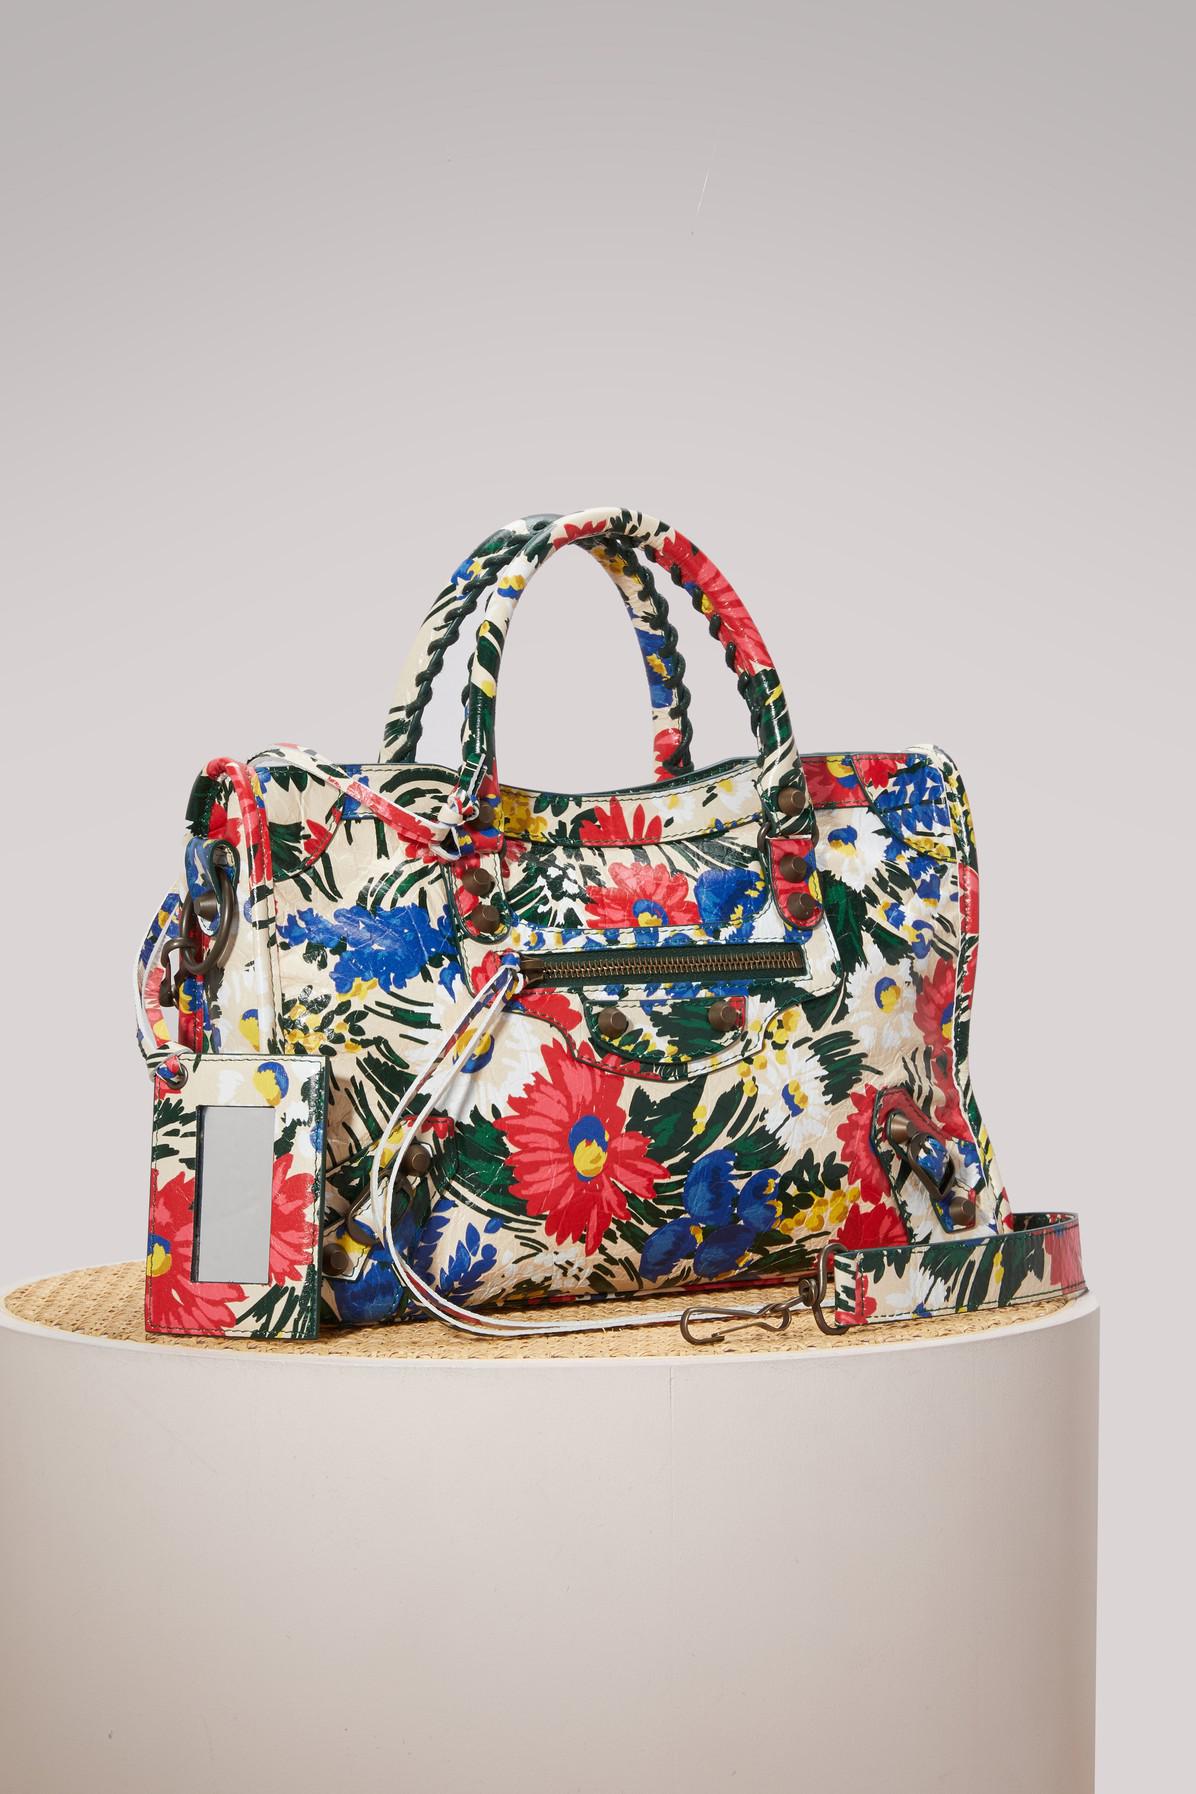 Balenciaga Classic City Flower Handbag in Red - Lyst